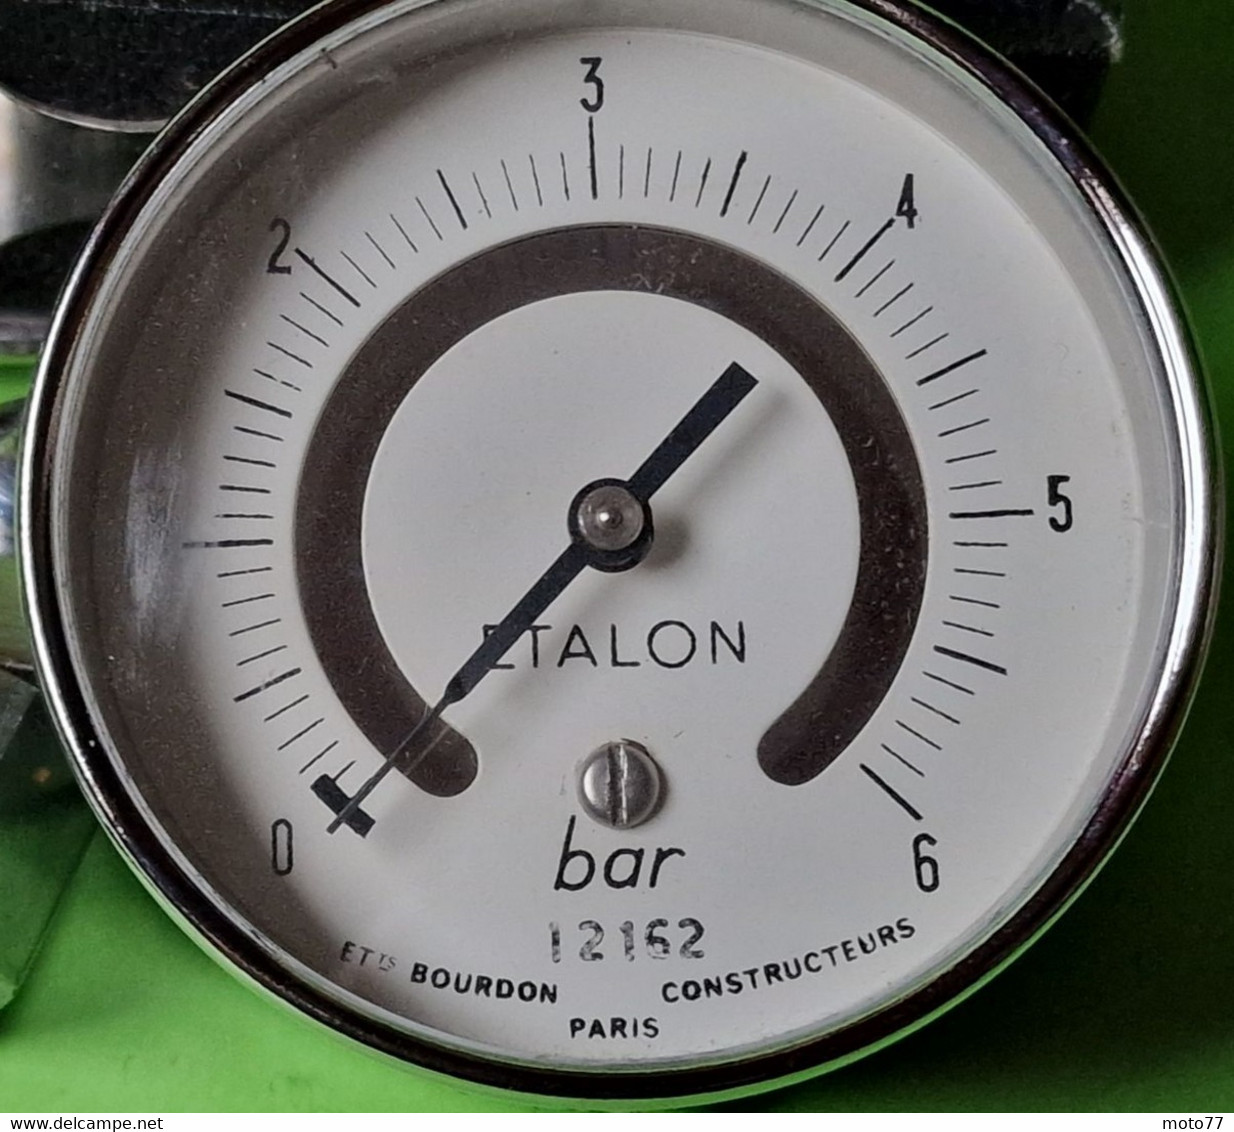 Ancien appareil ÉTALON mesure PRESSION 6 bars - Métal chromé - Très Jolie Boite bois  "laissé dans son jus" - vers 1960